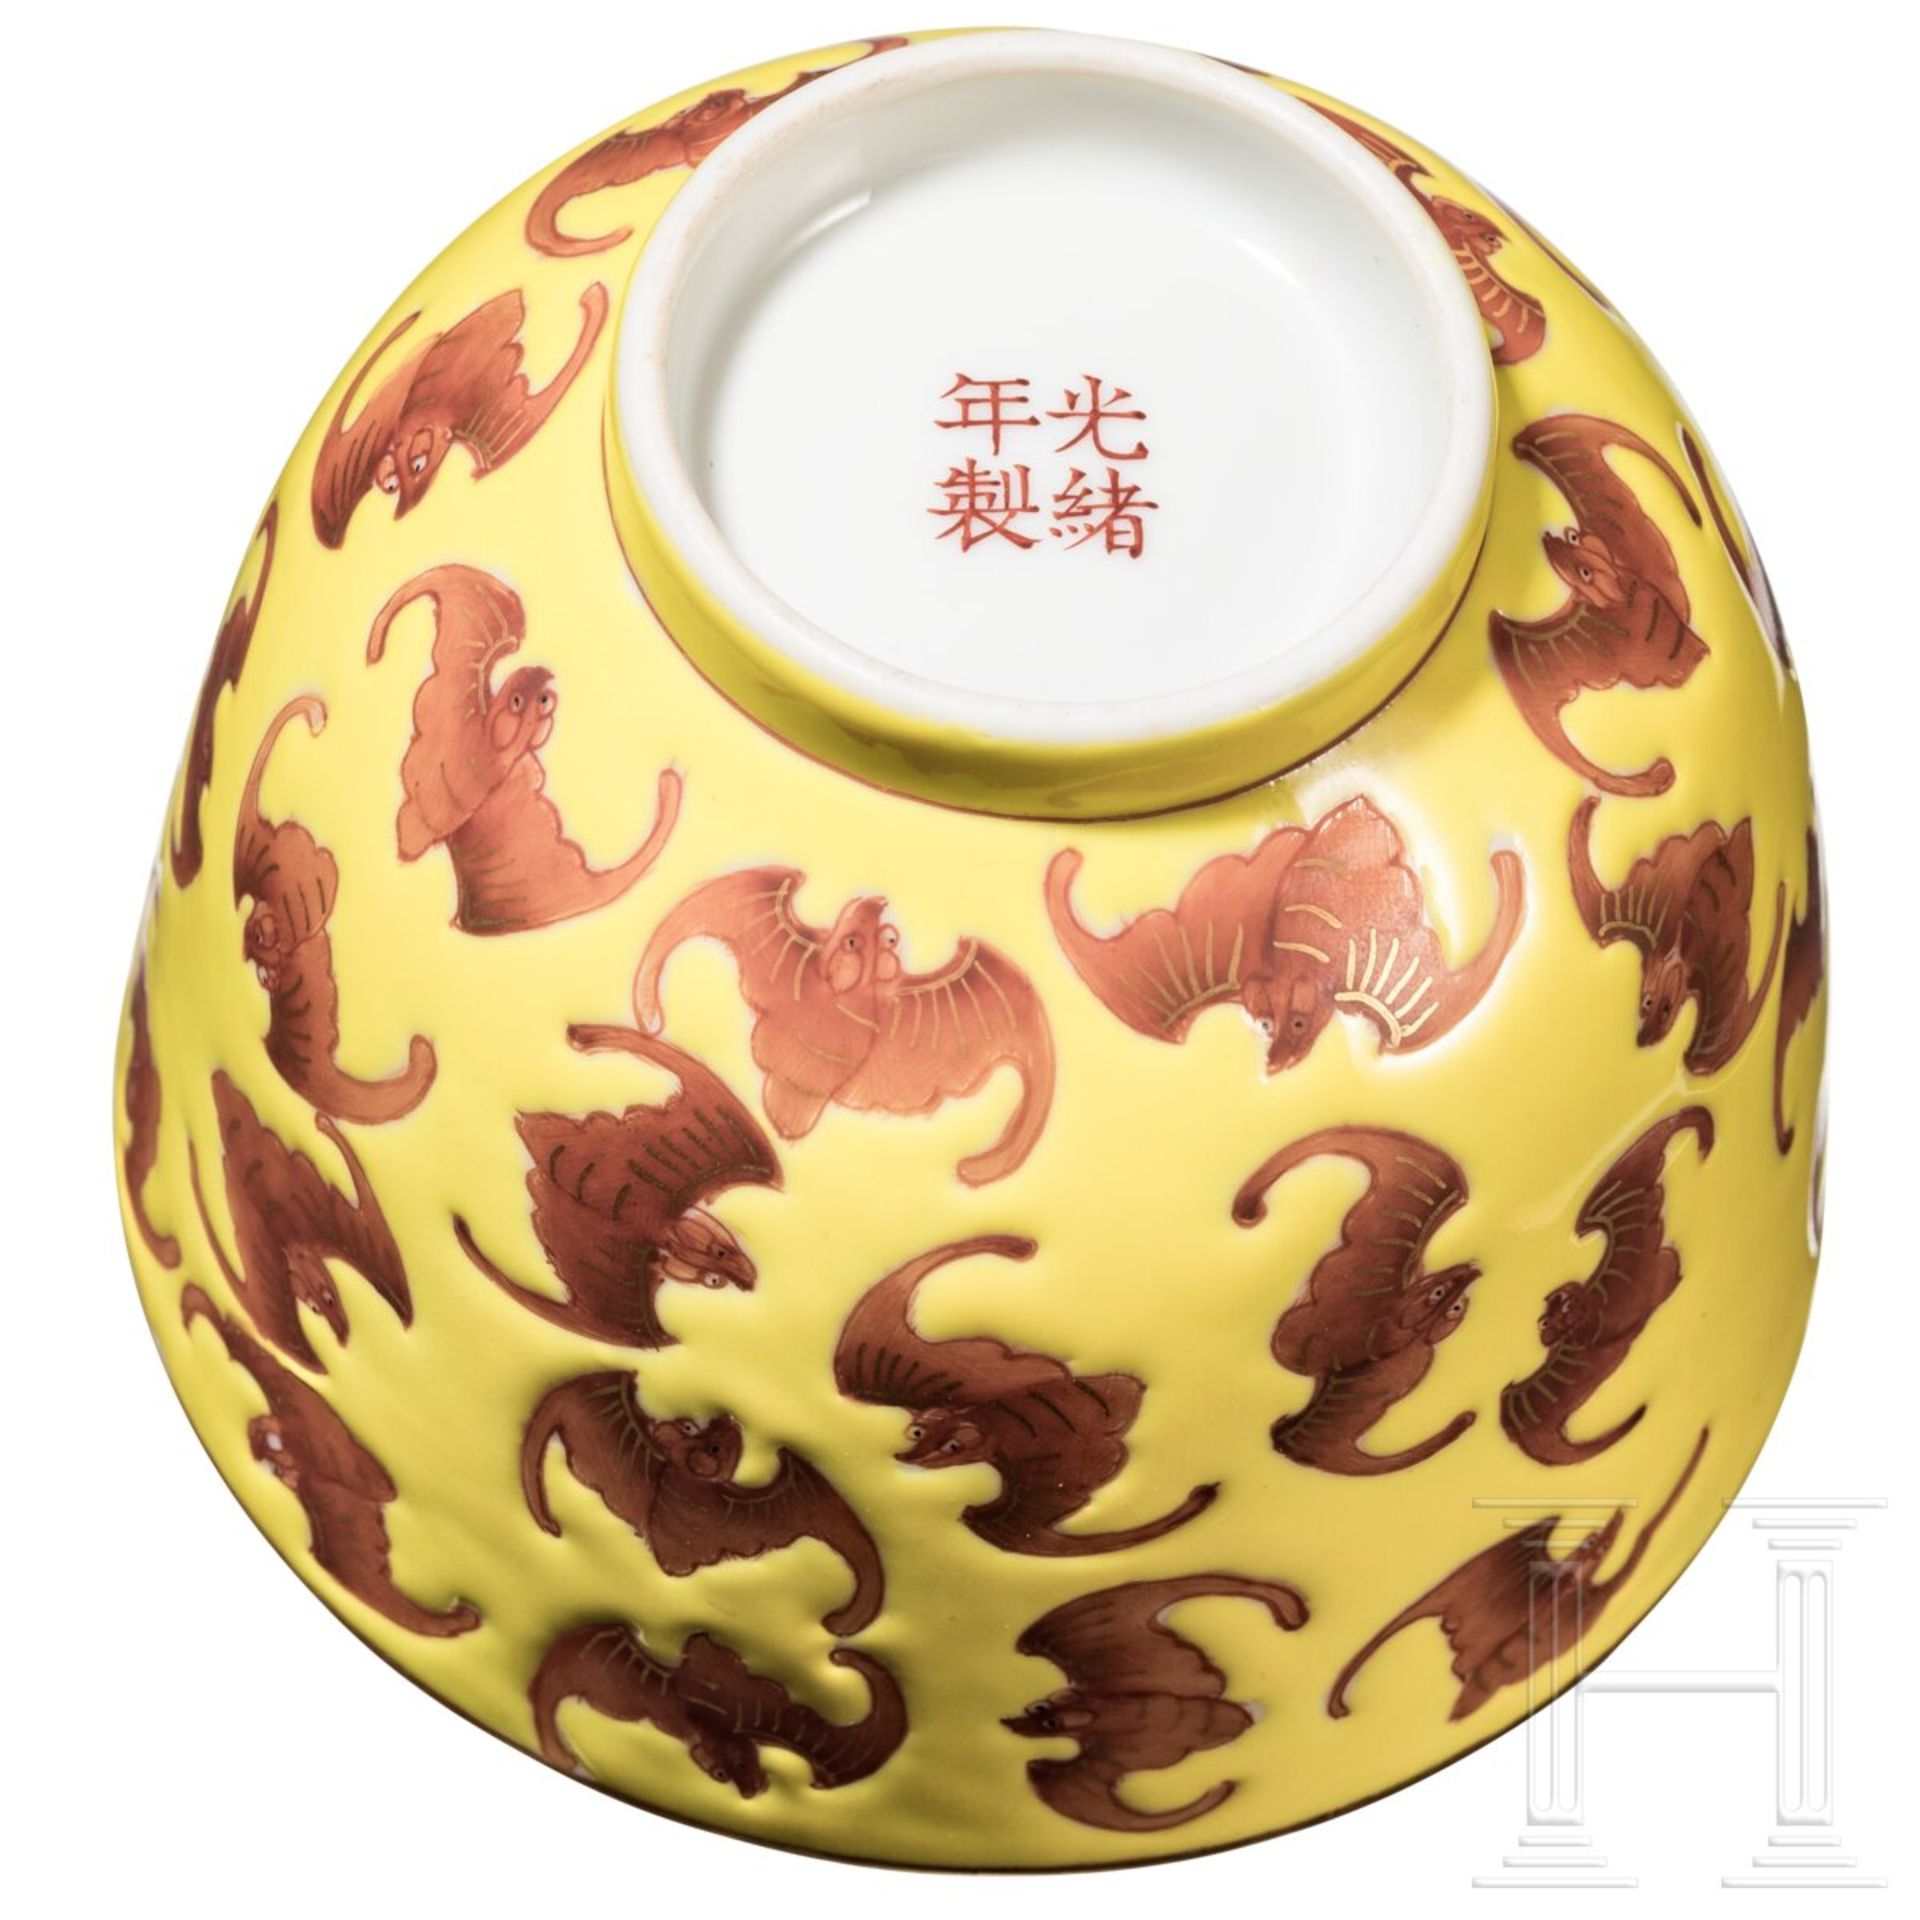 Gelb glasierte Schale mit Fledermäusen und Guangxu-Marke, China, 19./20. Jhdt. - Bild 3 aus 7